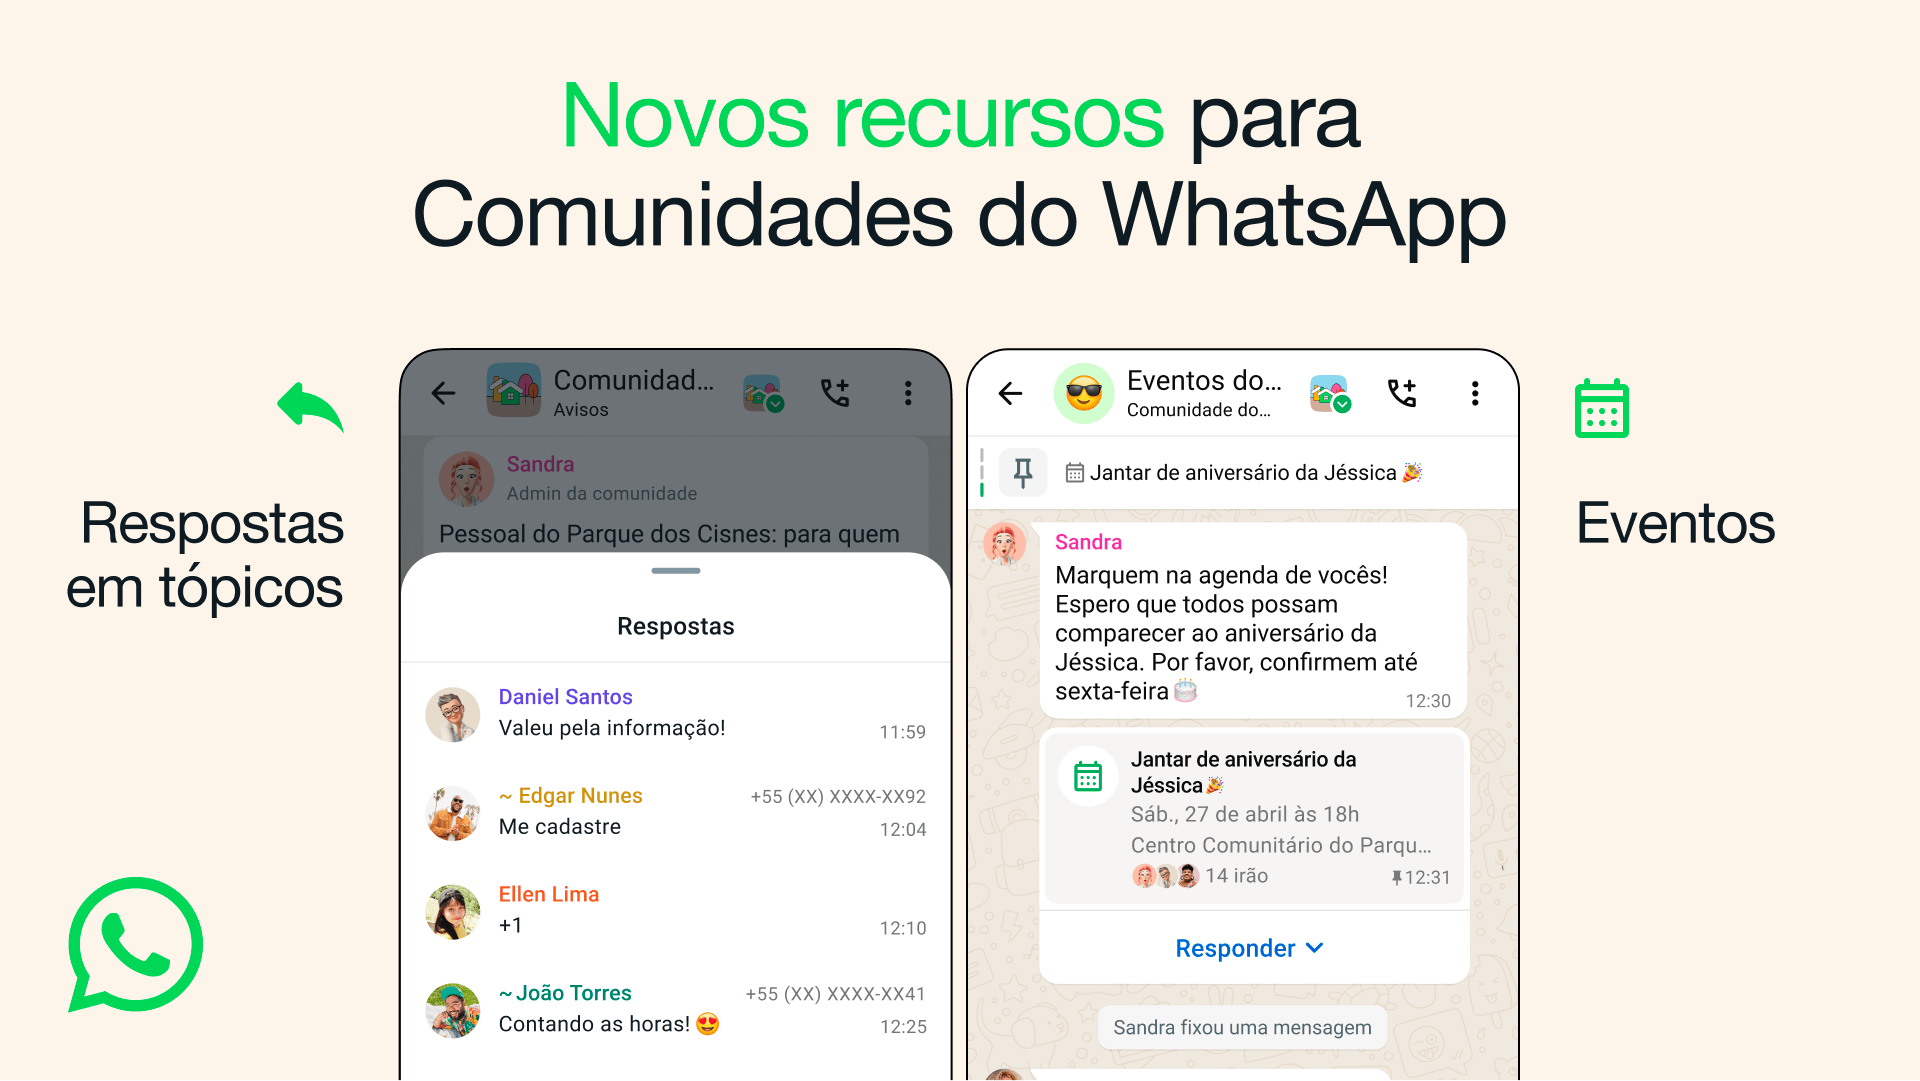 Dois prints do WhatsApp mostrando respostas em tópicos e eventos em comunidades.